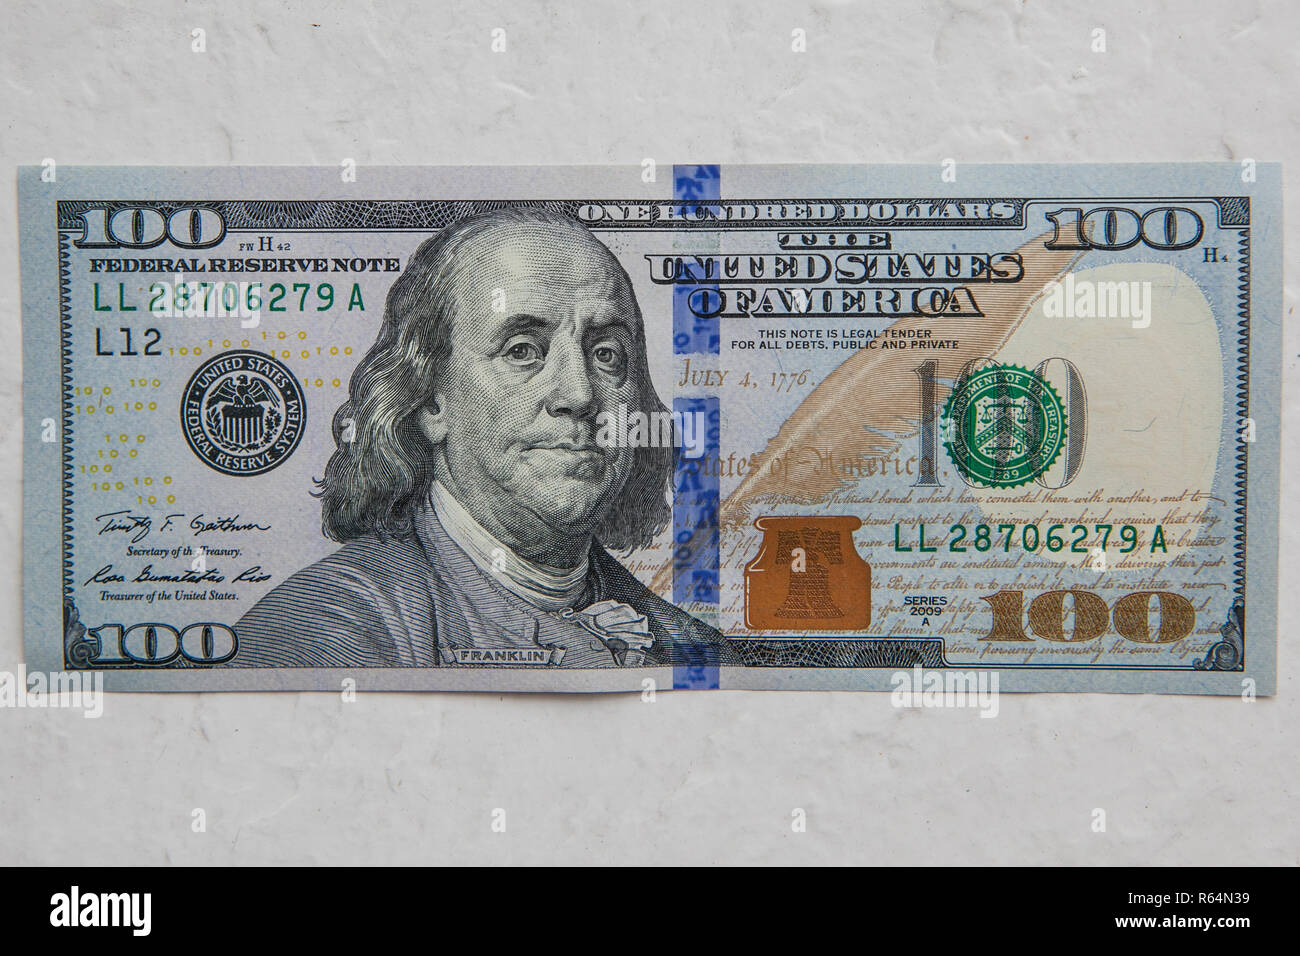 100 dollar bill usa benjamin hi-res stock photography and images - Alamy